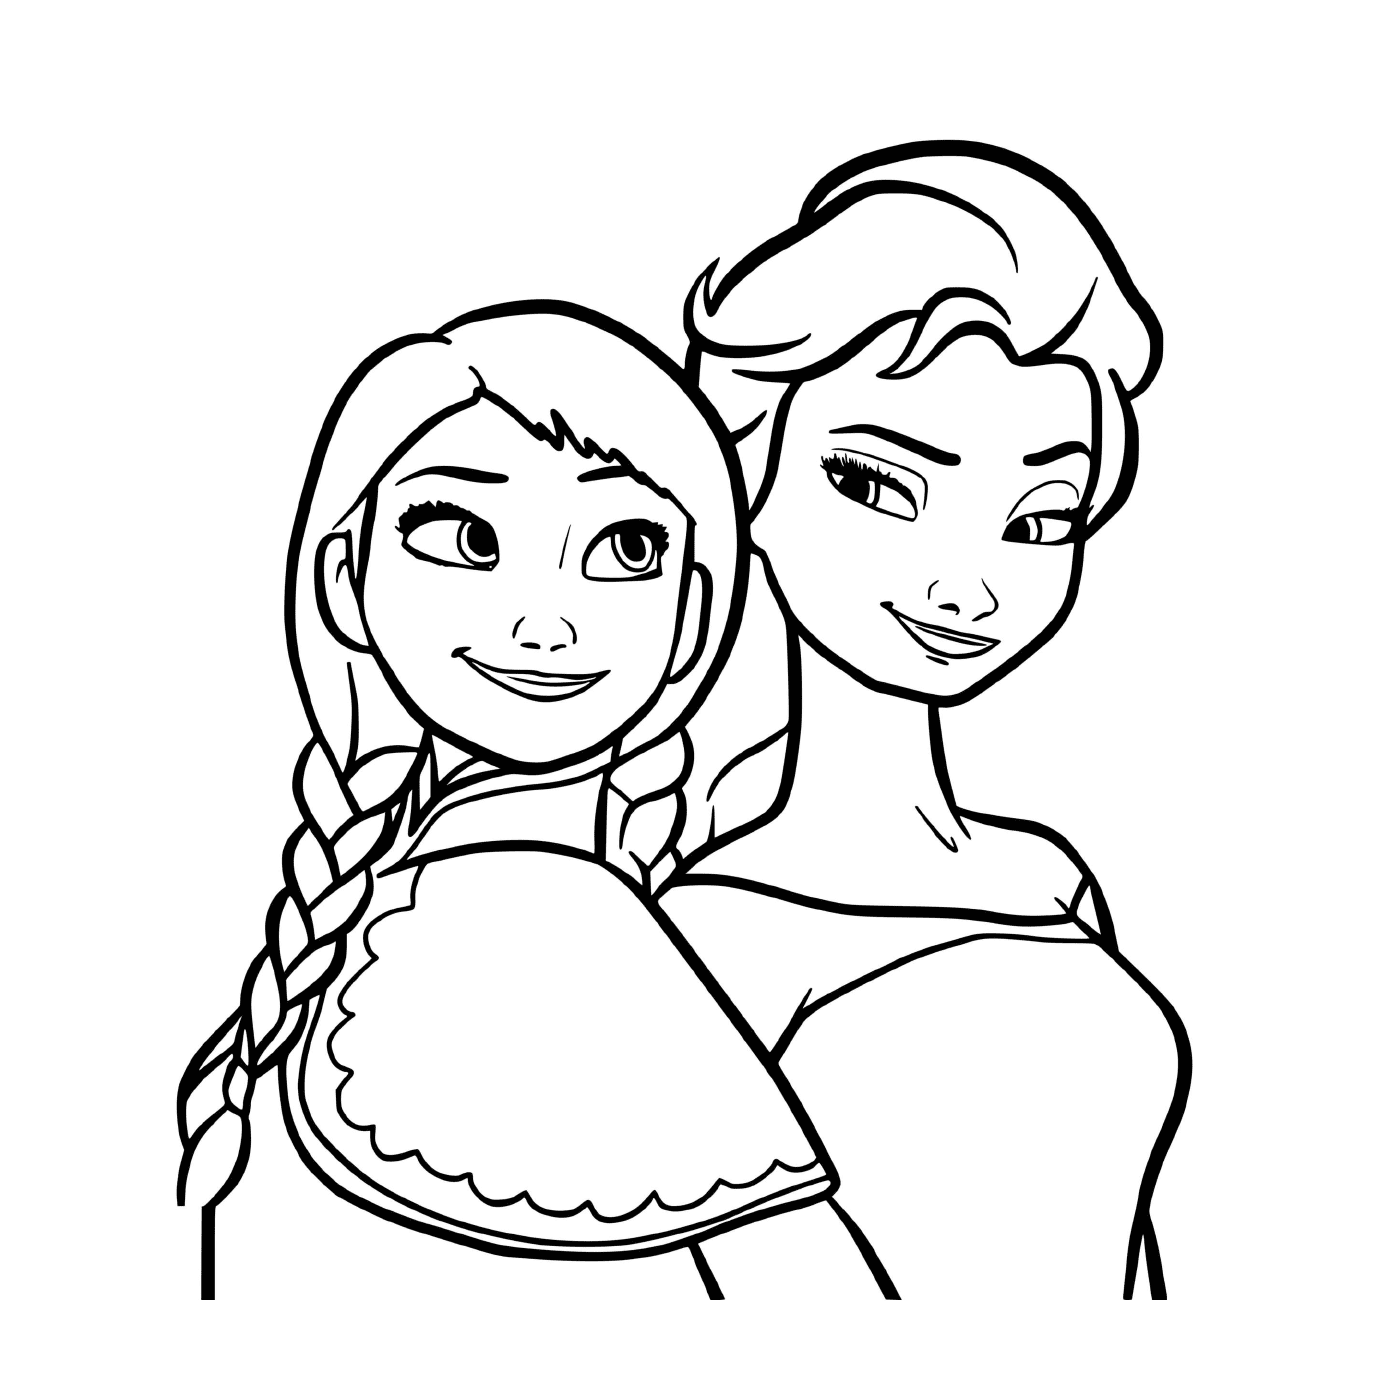  Las princesas del reino, Elsa y Anna 